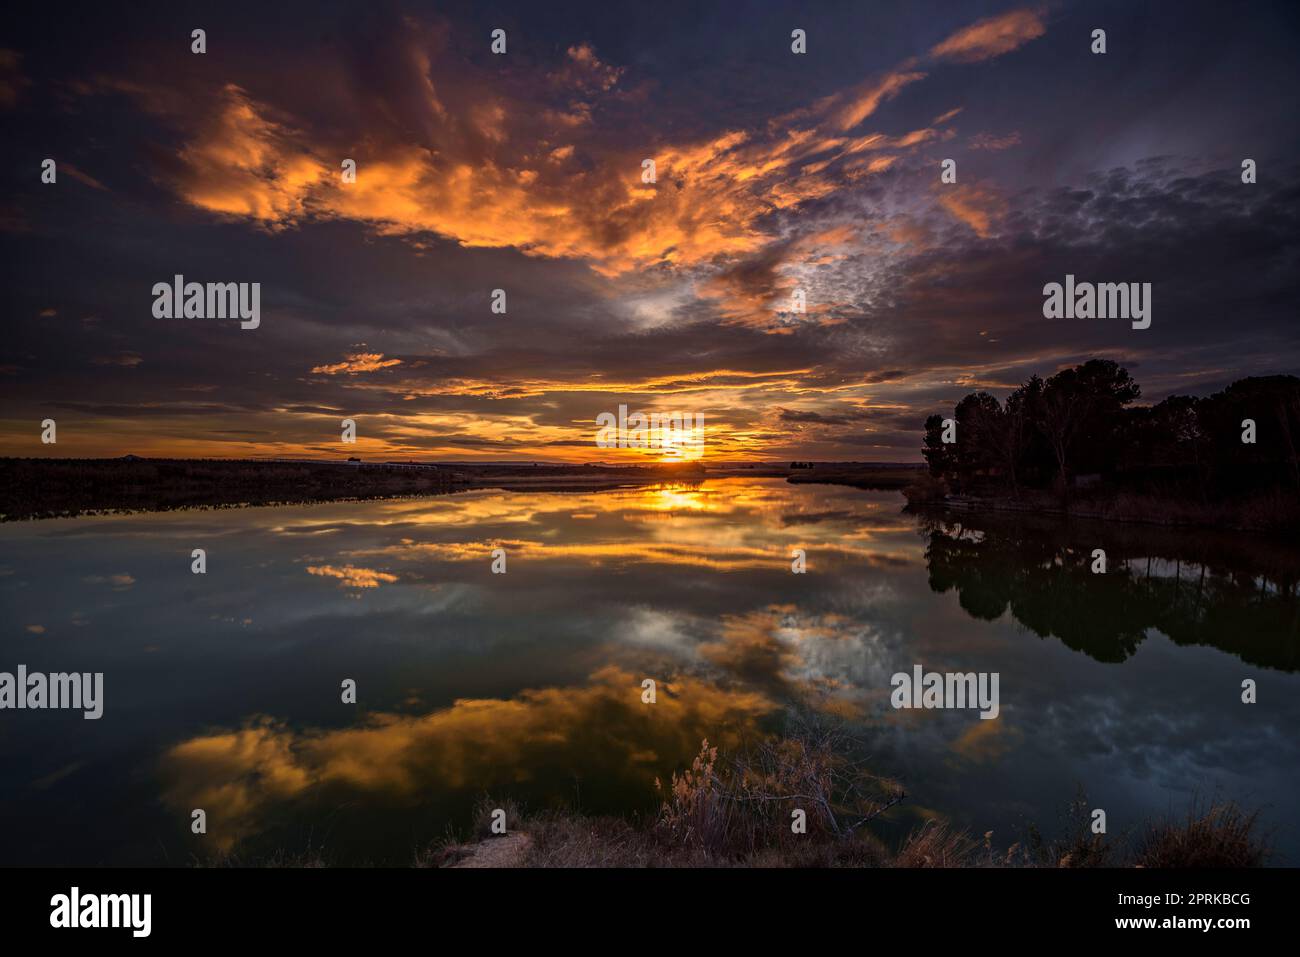 Sunset with a red sky in the Utxesa reservoir in Torres de Segre (Segrià, Lleida, Catalonia, Spain) ESP: Atardecer con cielo rojizo en Utxesa Stock Photo